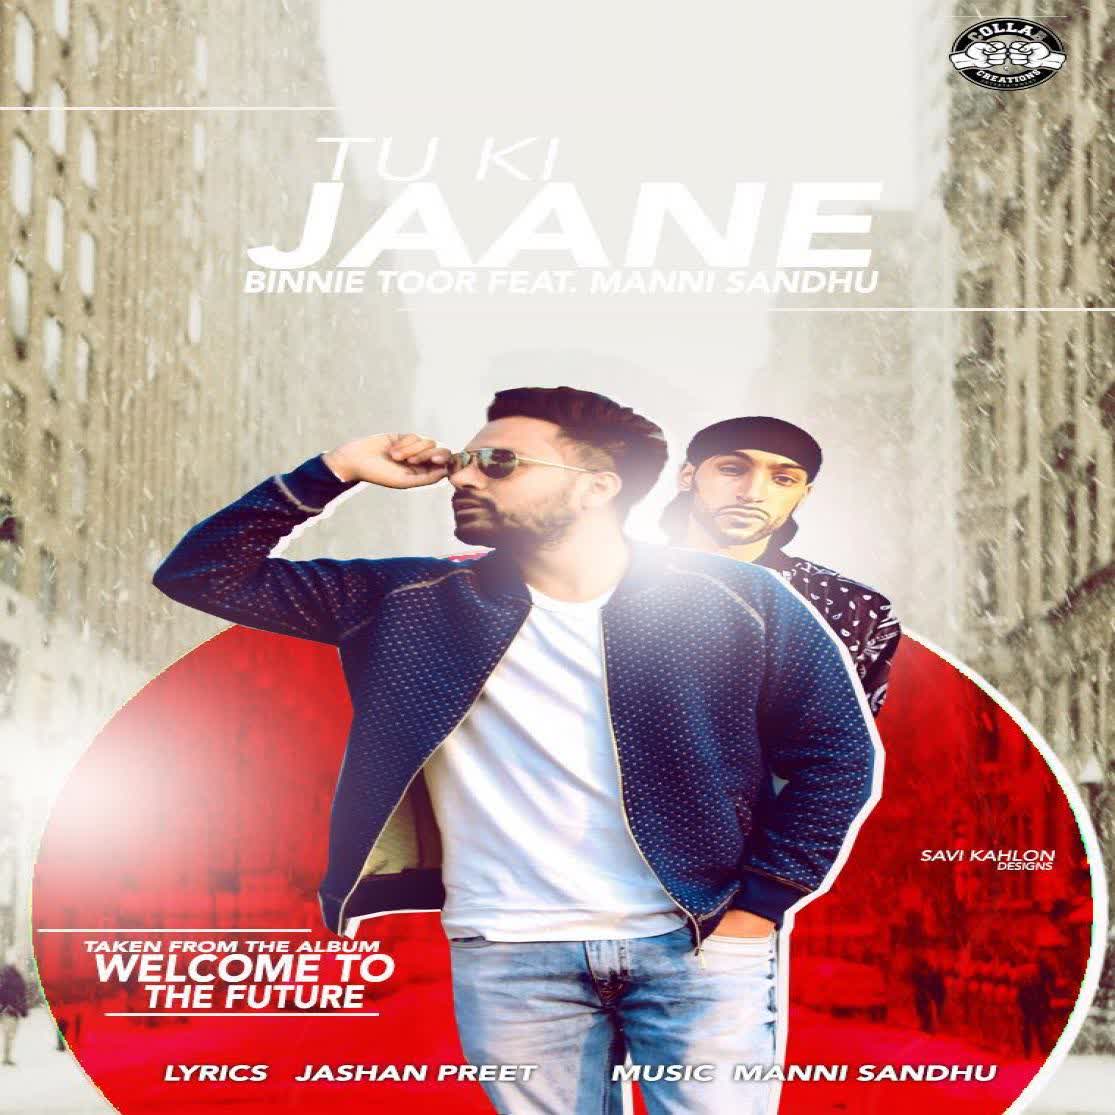 Tu Ki Jaane Binnie Toor  Mp3 song download